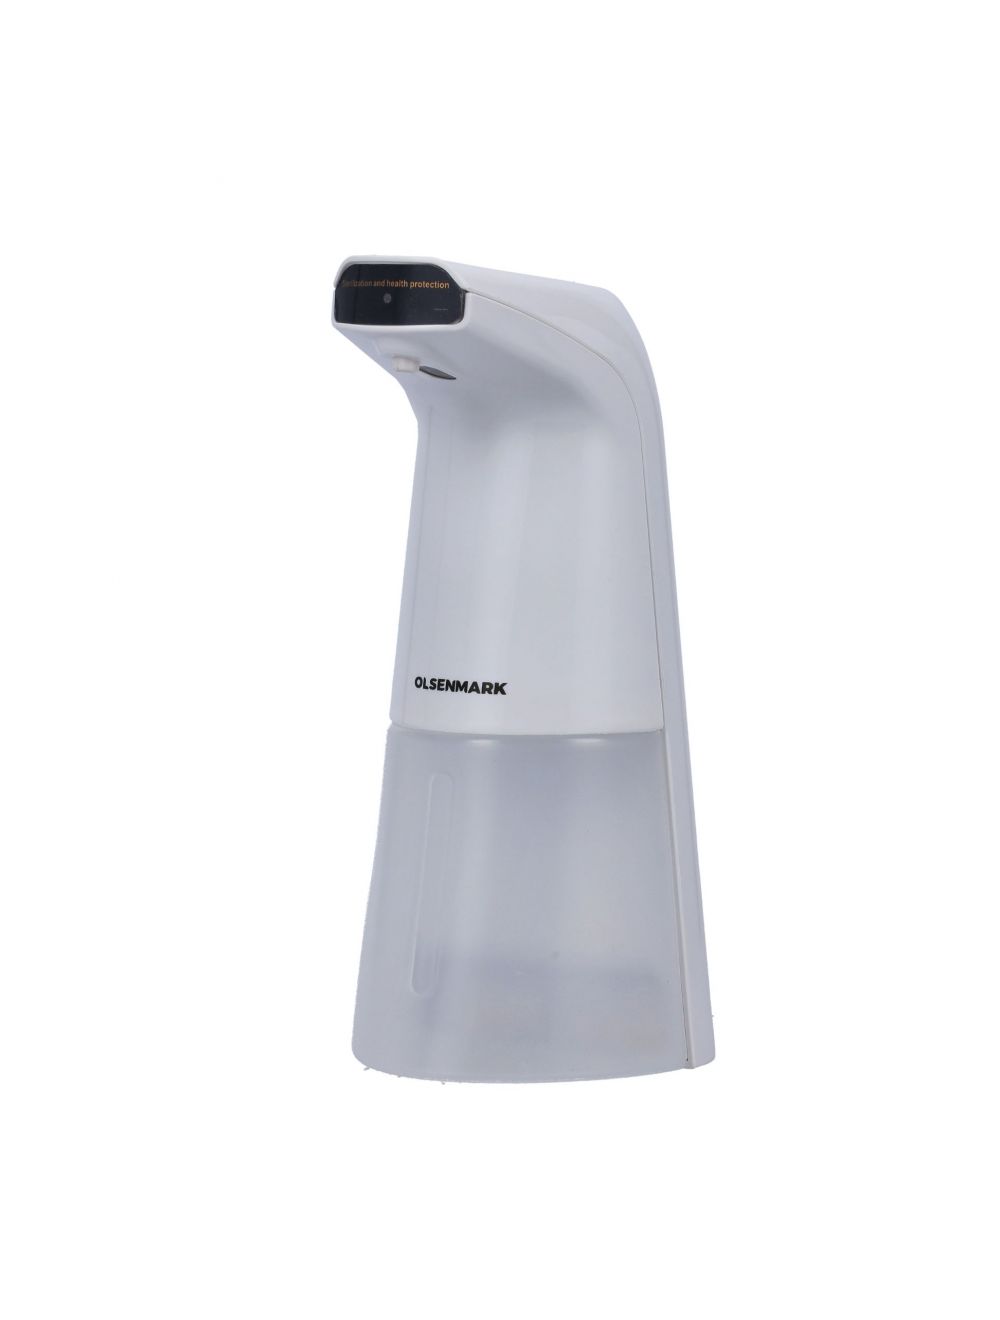 Olsenmark Automatic Sanitizer Spray Dispenser